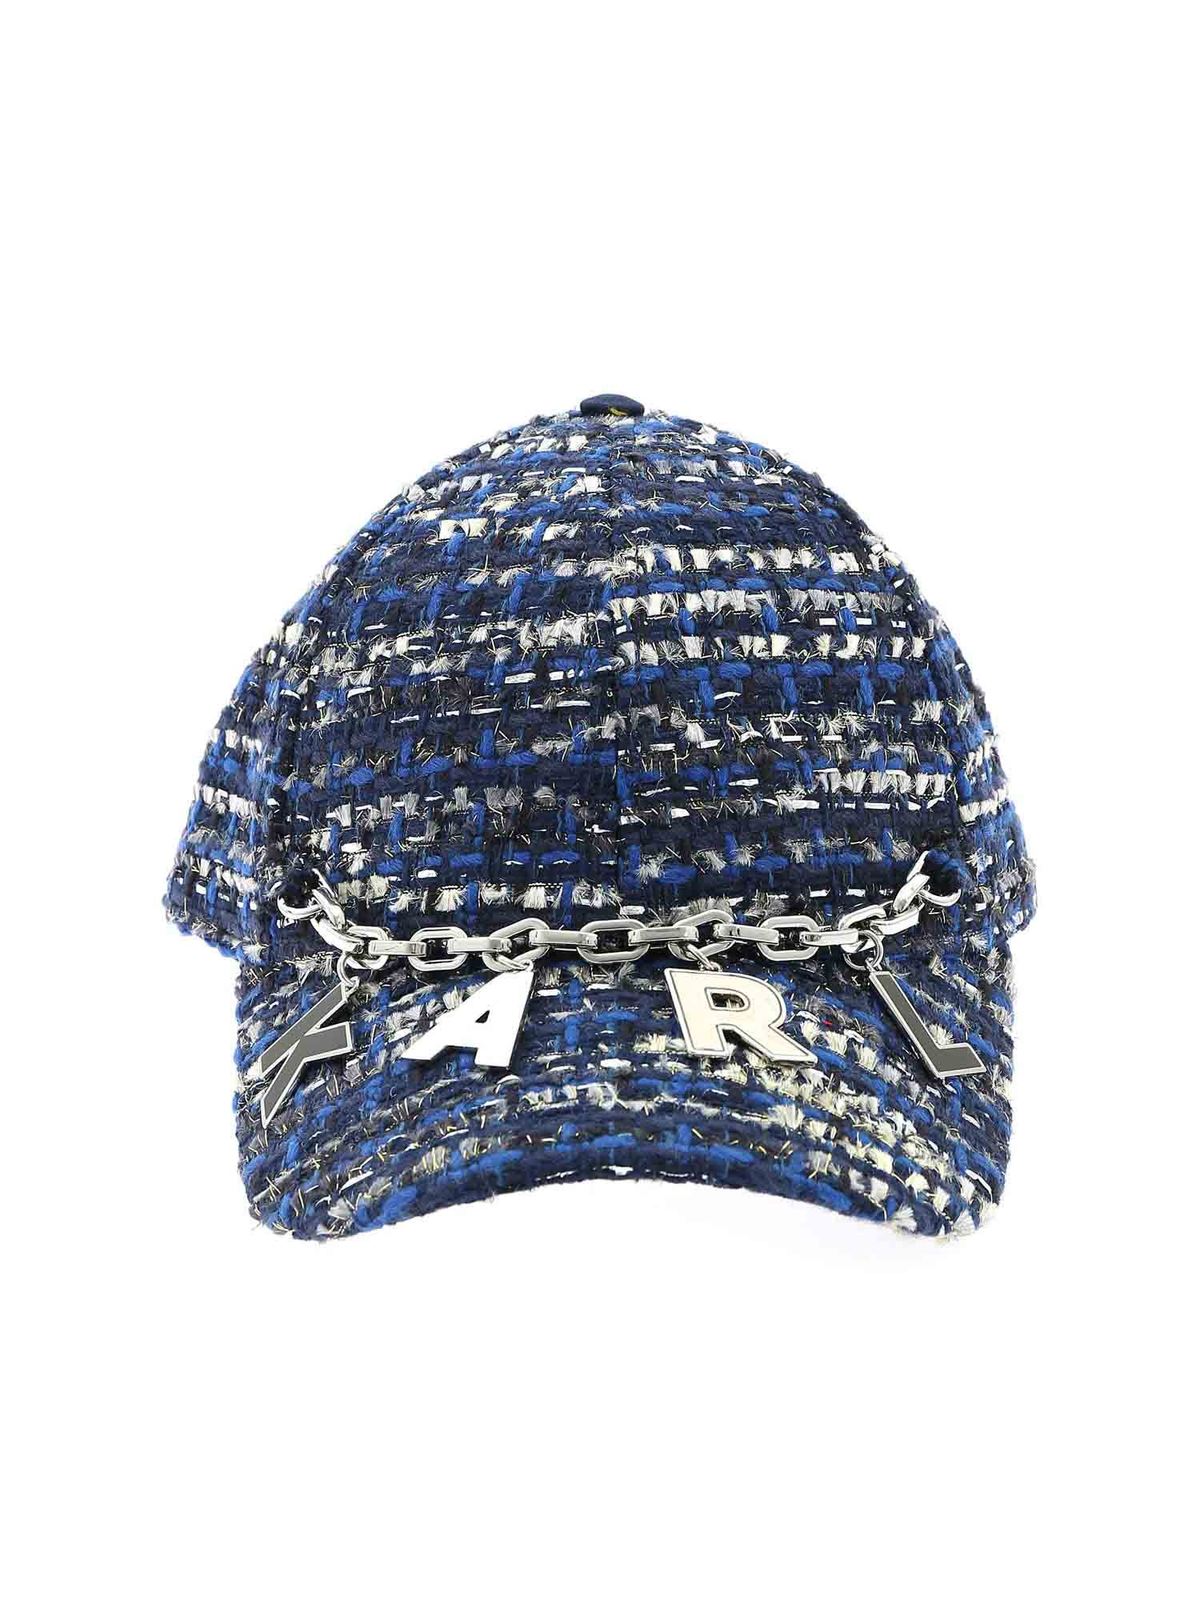 KARL LAGERFELD TWEED LOGO CAP IN SHADES OF BLUE